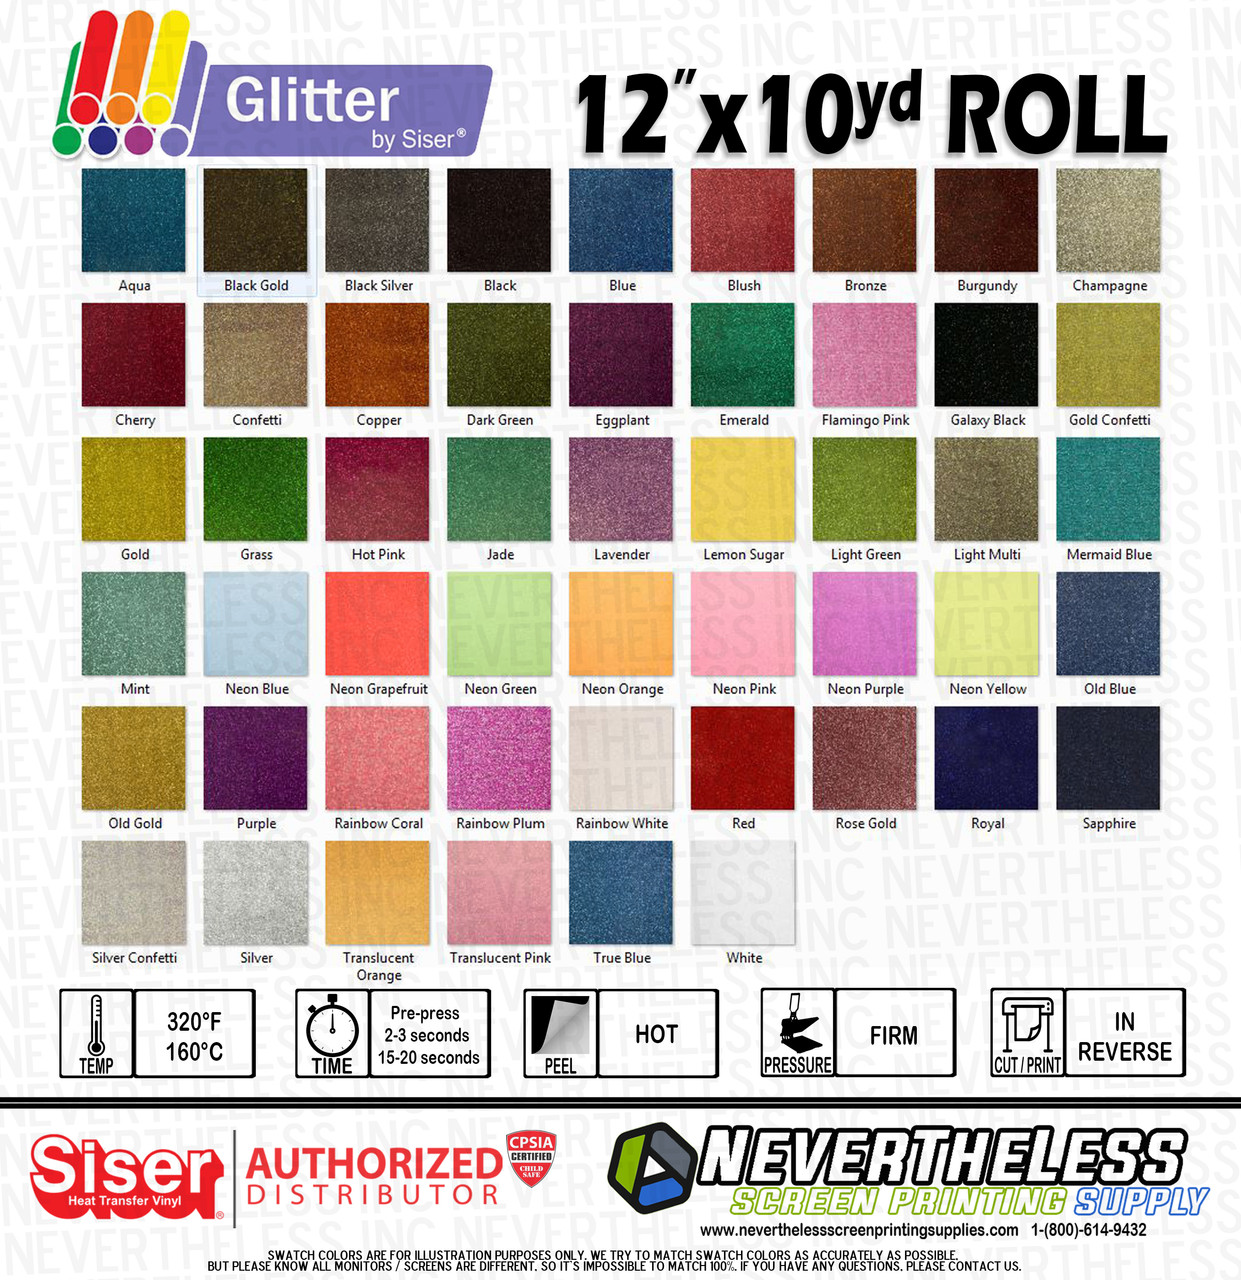 Siser Glitter HTV Heat Transfer Vinyl - 12x10yd Roll